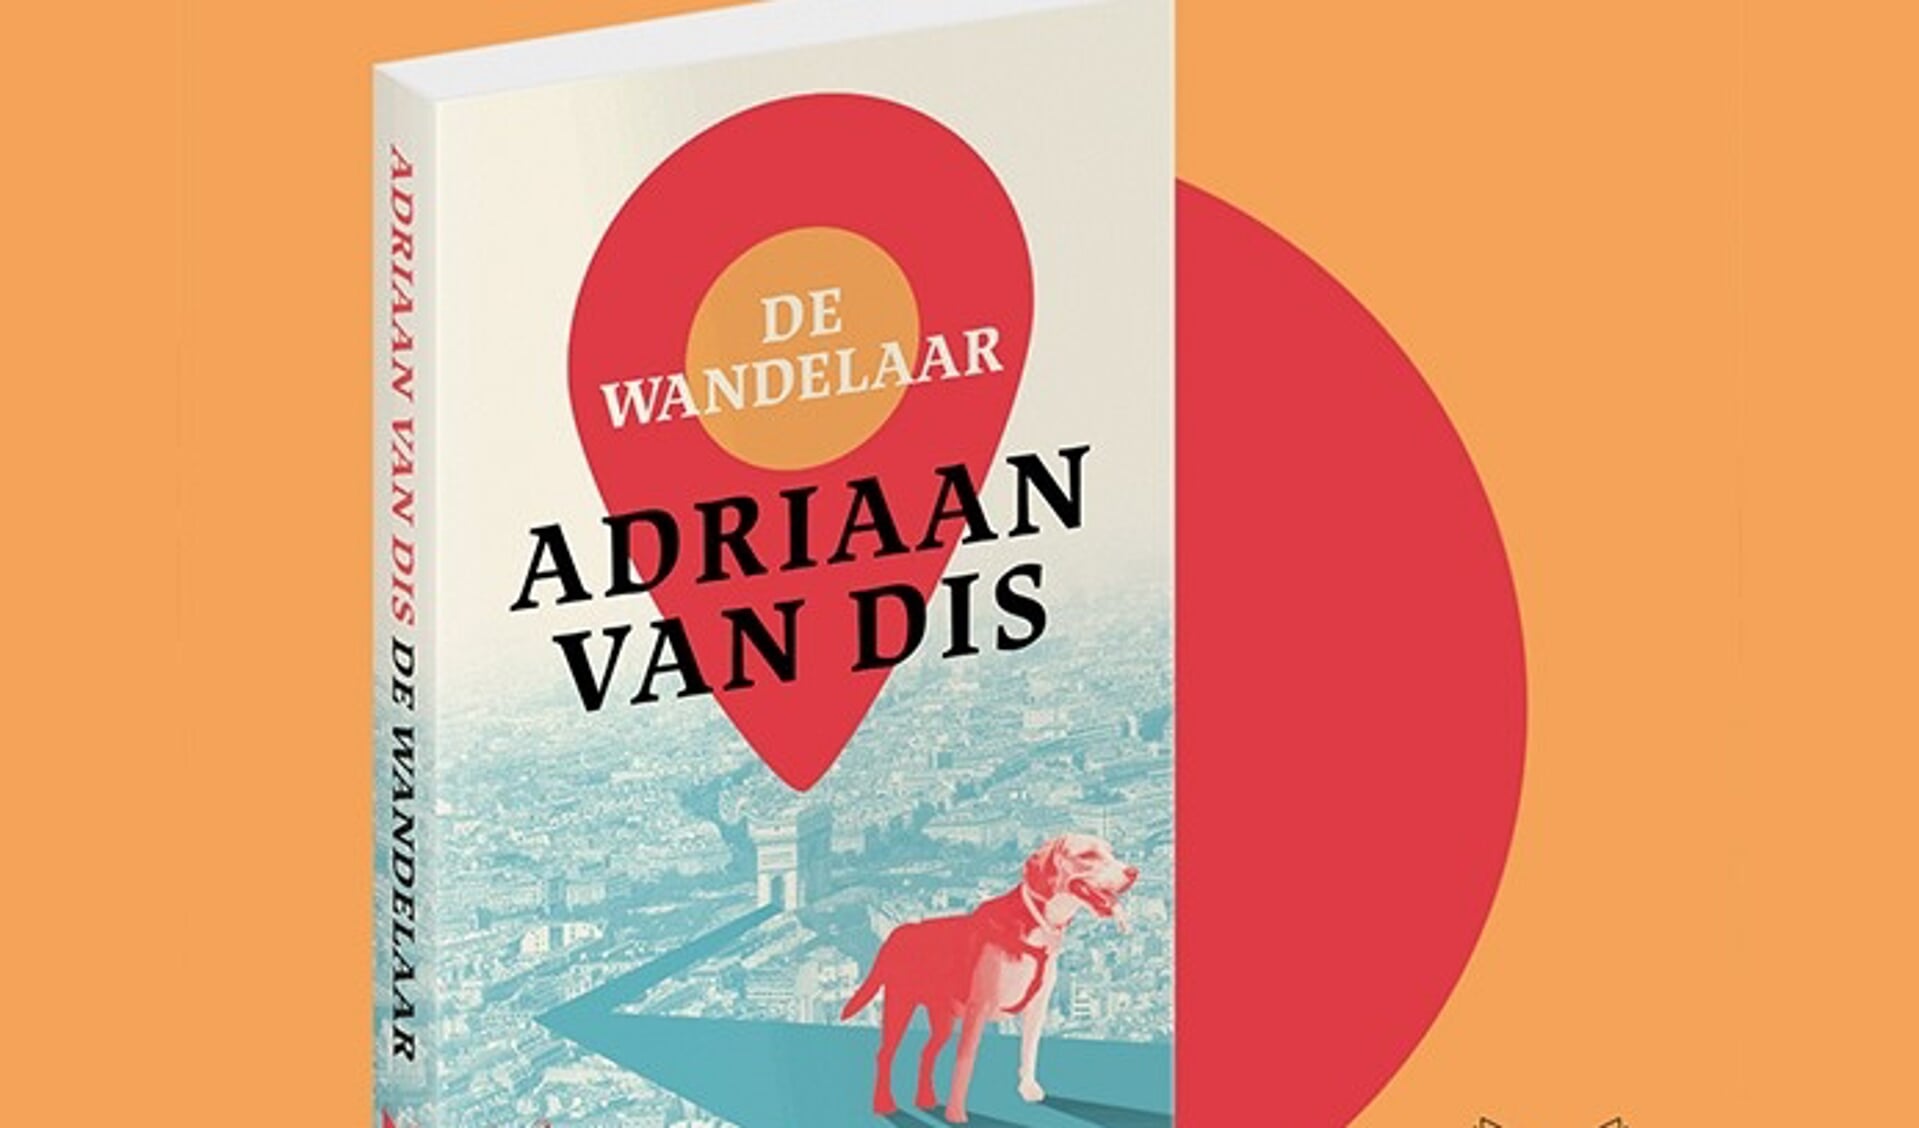 In november krijg je het boek 'De wandelaar' van schrijver Adriaan van Dis cadeau! 